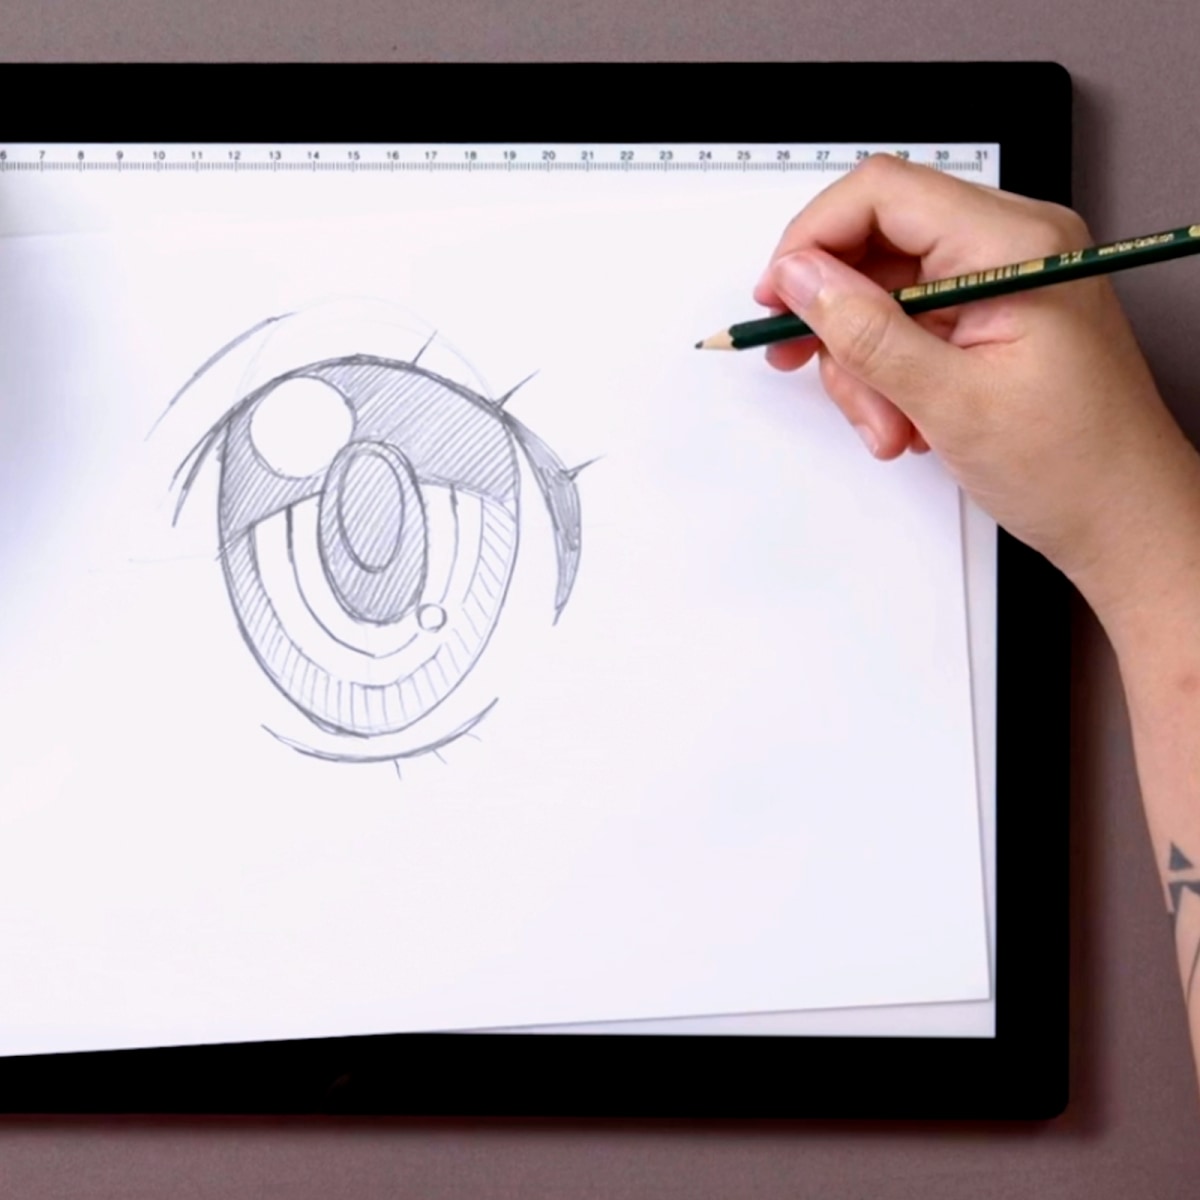 como desenhar olhos de mangá passo a passo - Pesquisa Google